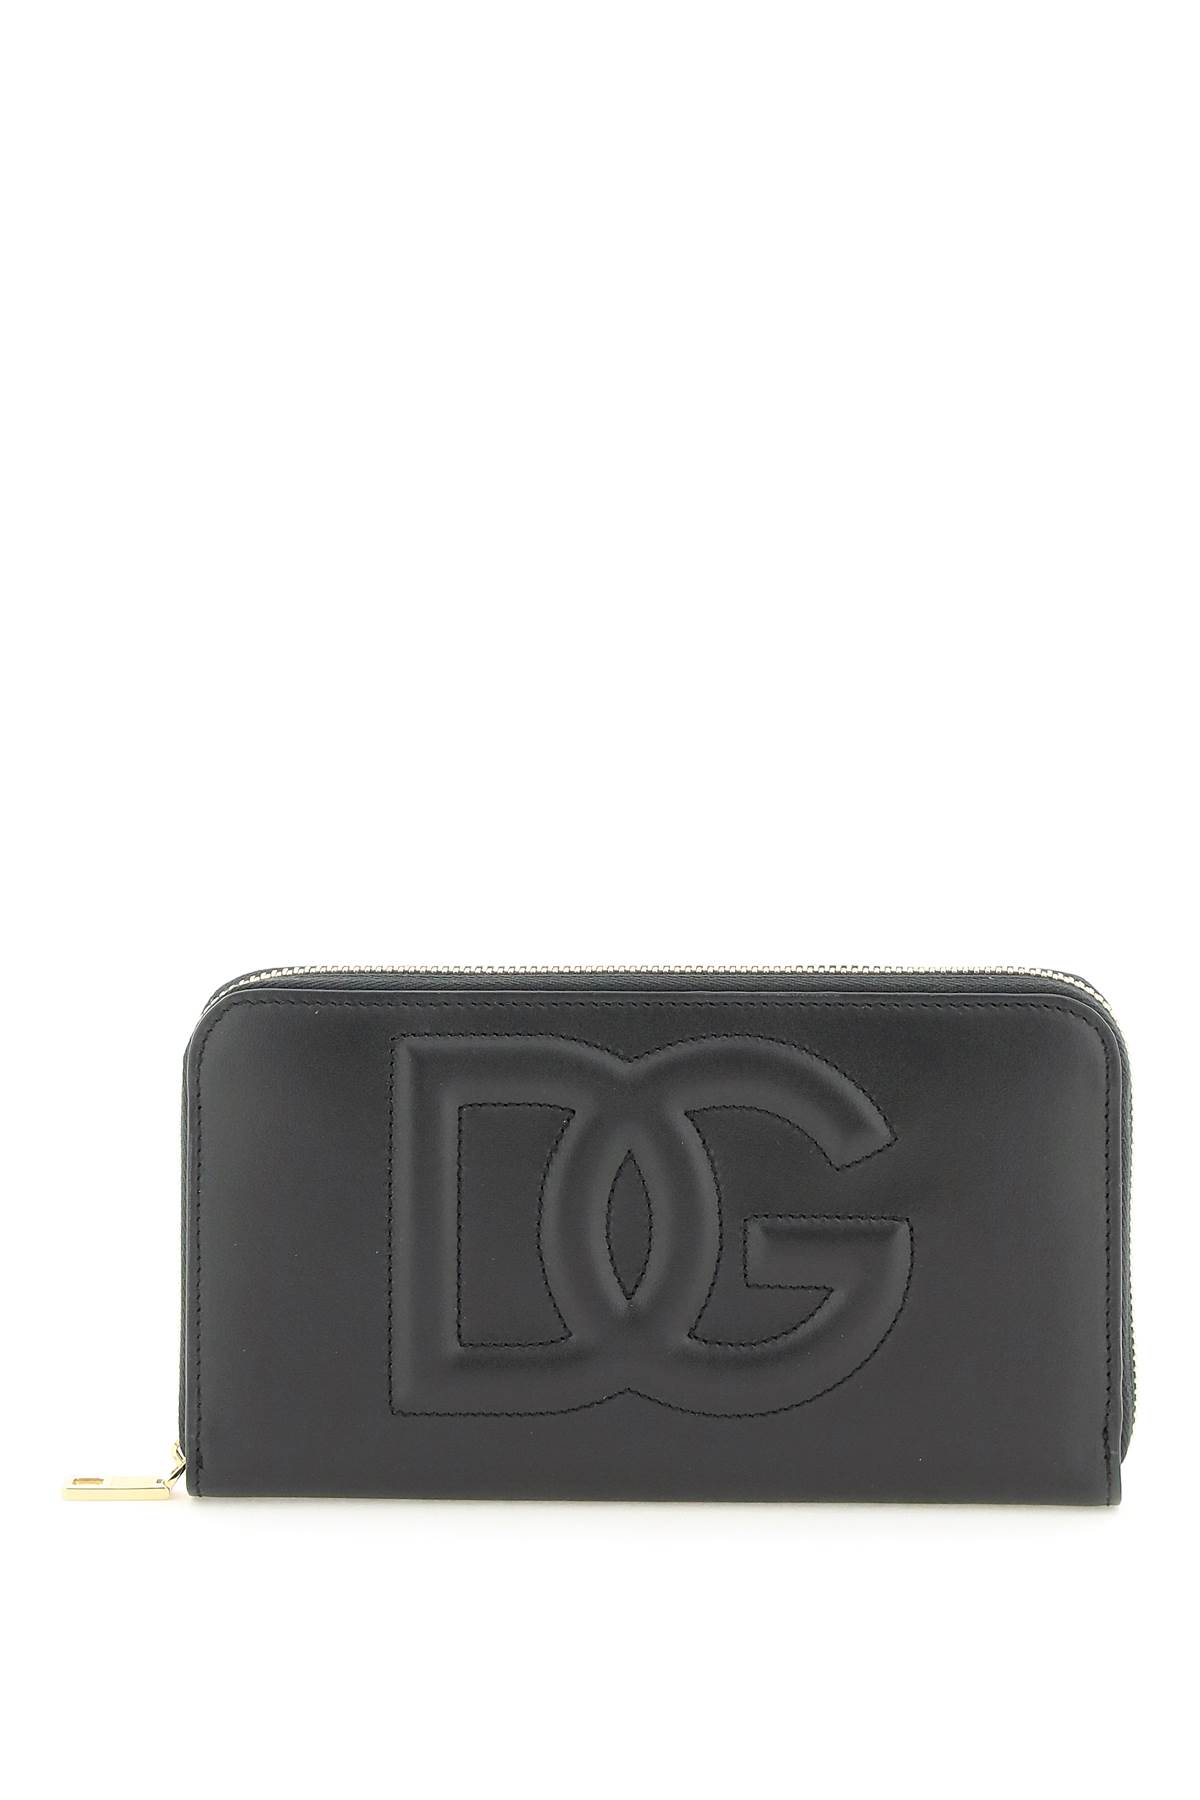 Dolce & Gabbana Zip Around Leather Wallet In Nero